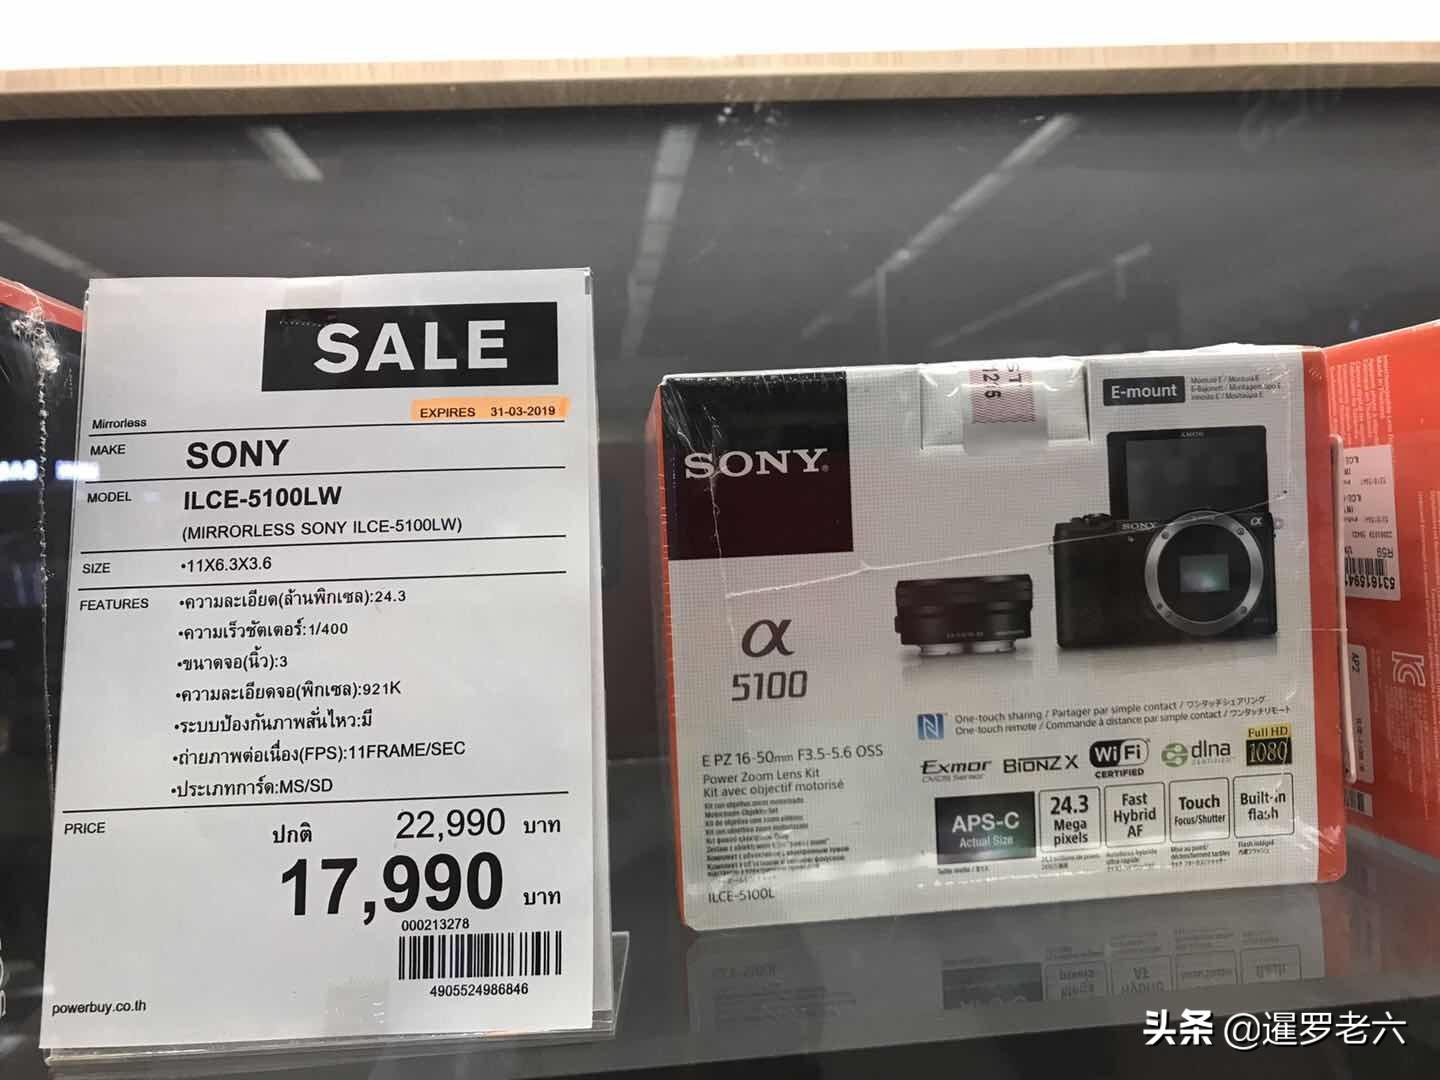 去泰国旅游，想买数码相机划算不？优惠多，也不一定比国内便宜！